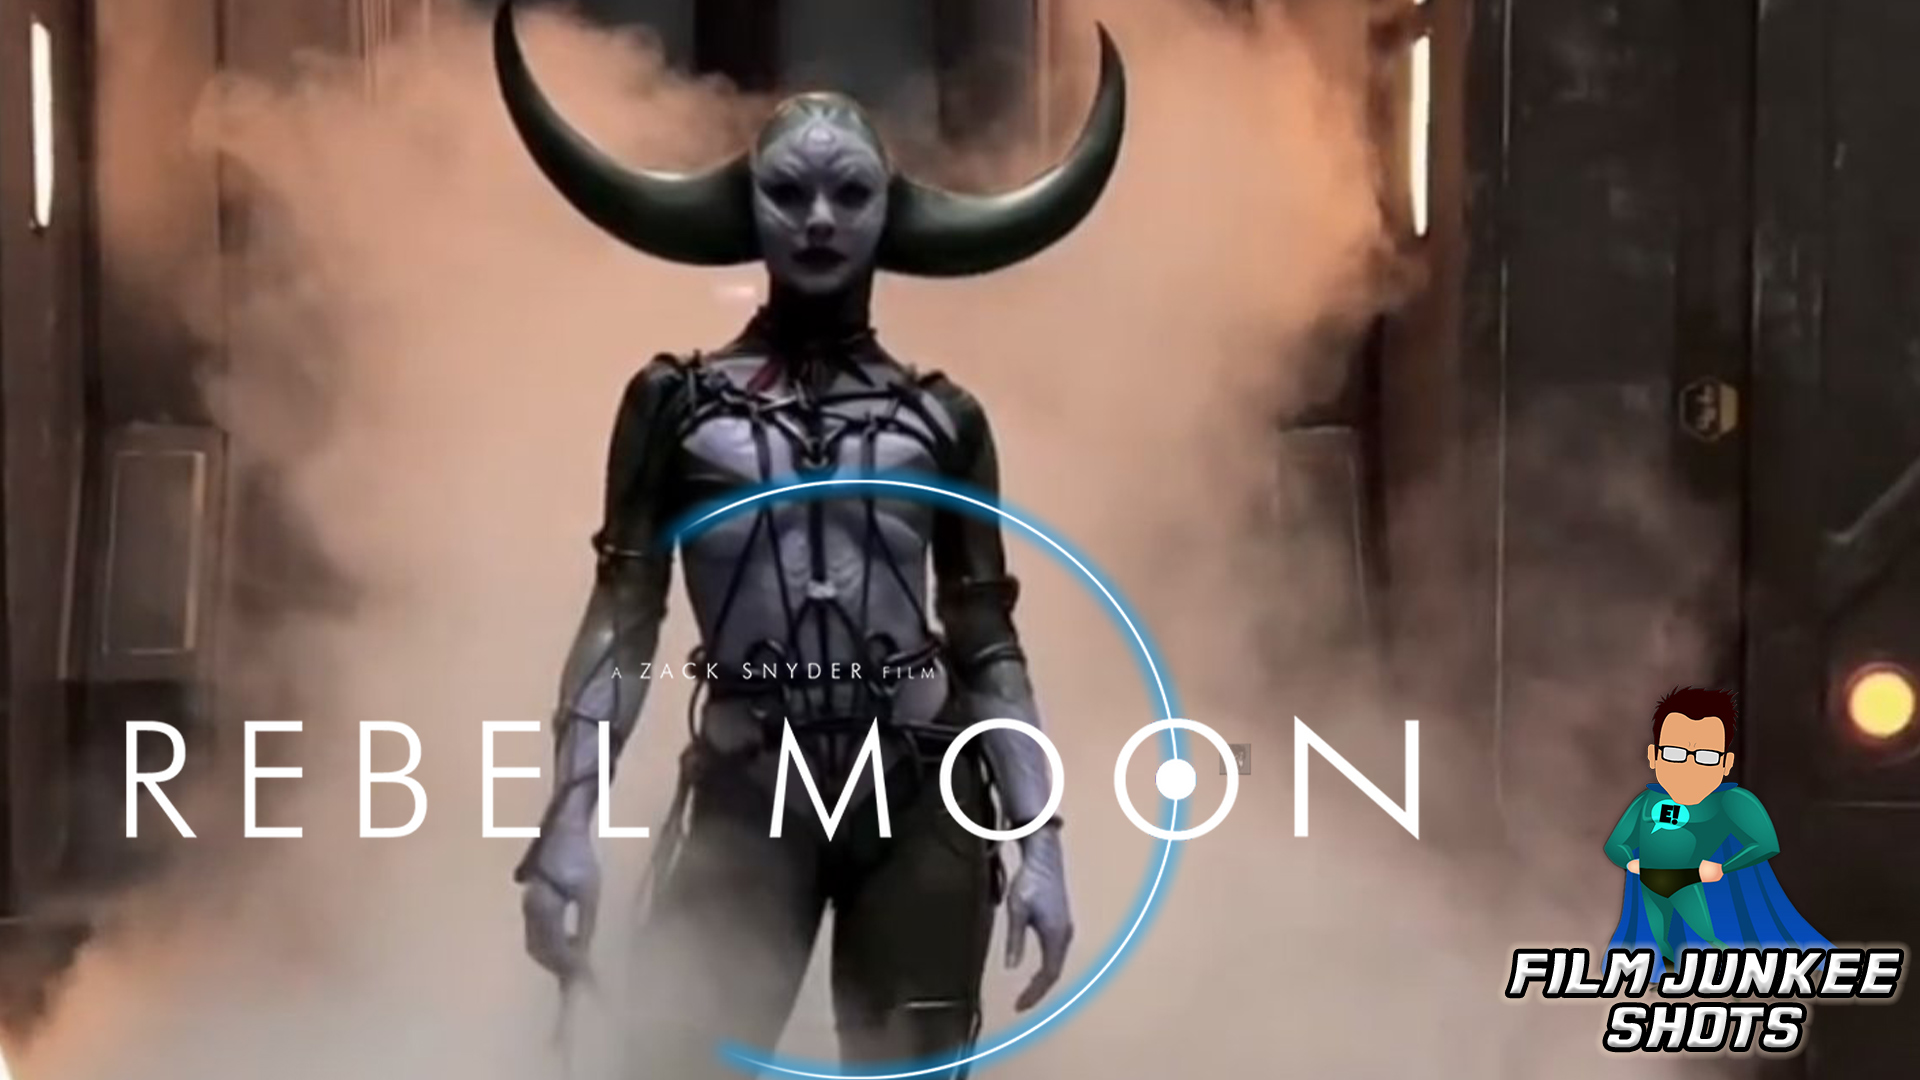 Rebel Moon': Zack Snyder Gets Gang Together for Trailer – The